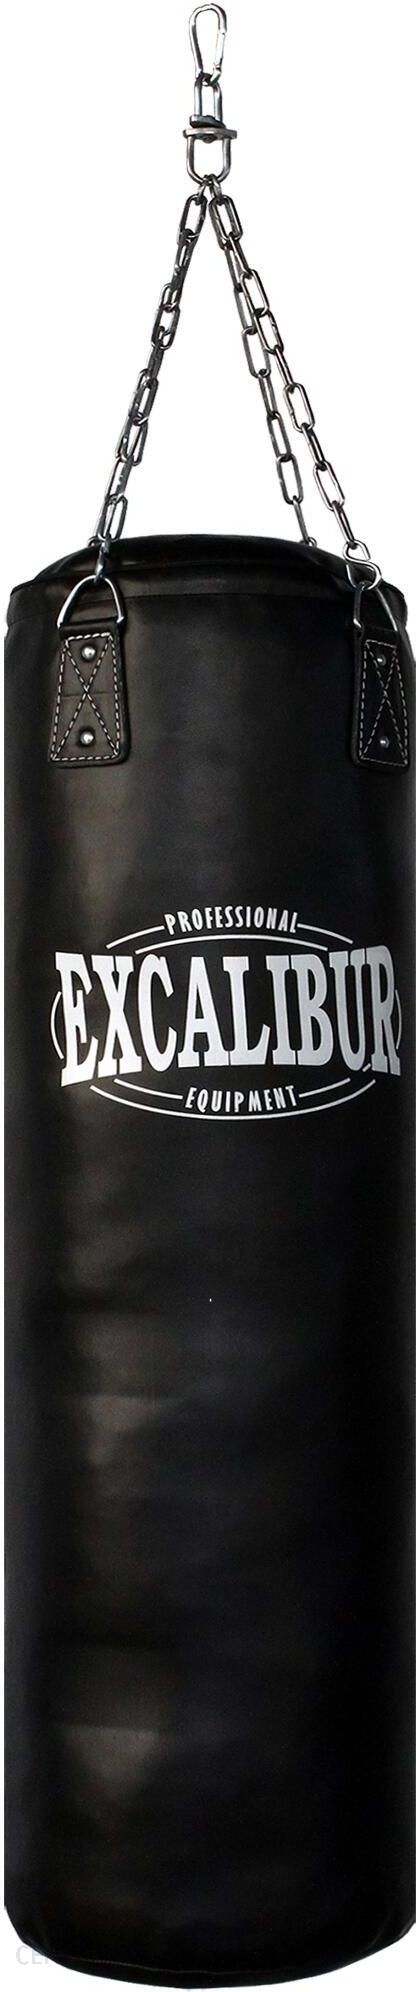 Excalibur Boxing Worek 34kg Pro 120 Maxxus Boxsack i Ceny Treningowy opinie Biały - Czarny